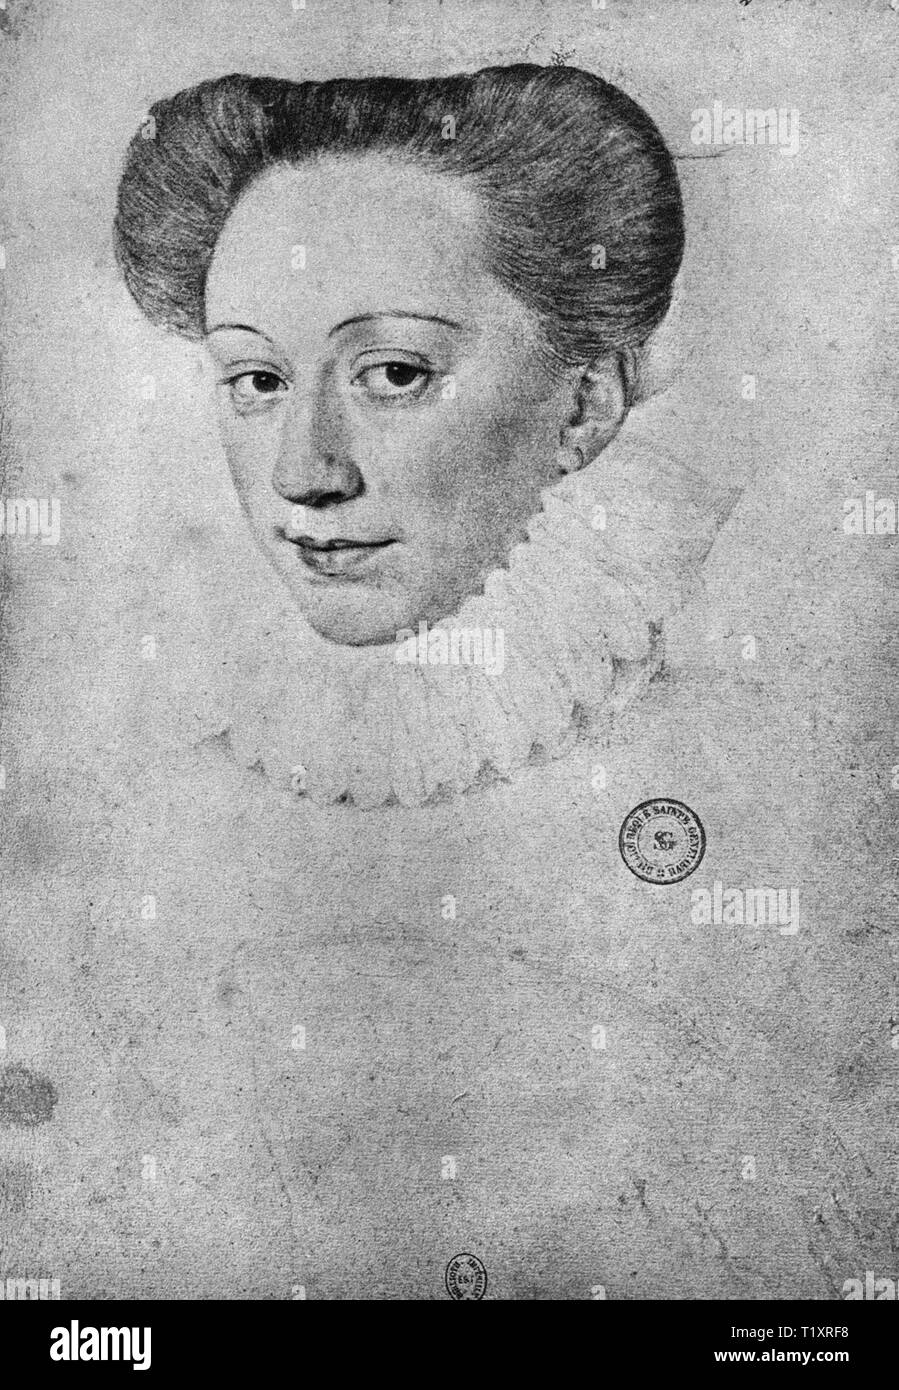 Belle arti, Rinascimento, ritratto di una donna sconosciuta, probabilmente François Clouet, disegno del XVI secolo, Bibliotheque Nationale di Parigi, Additional-Rights-Clearance-Info-Not-Available Foto Stock